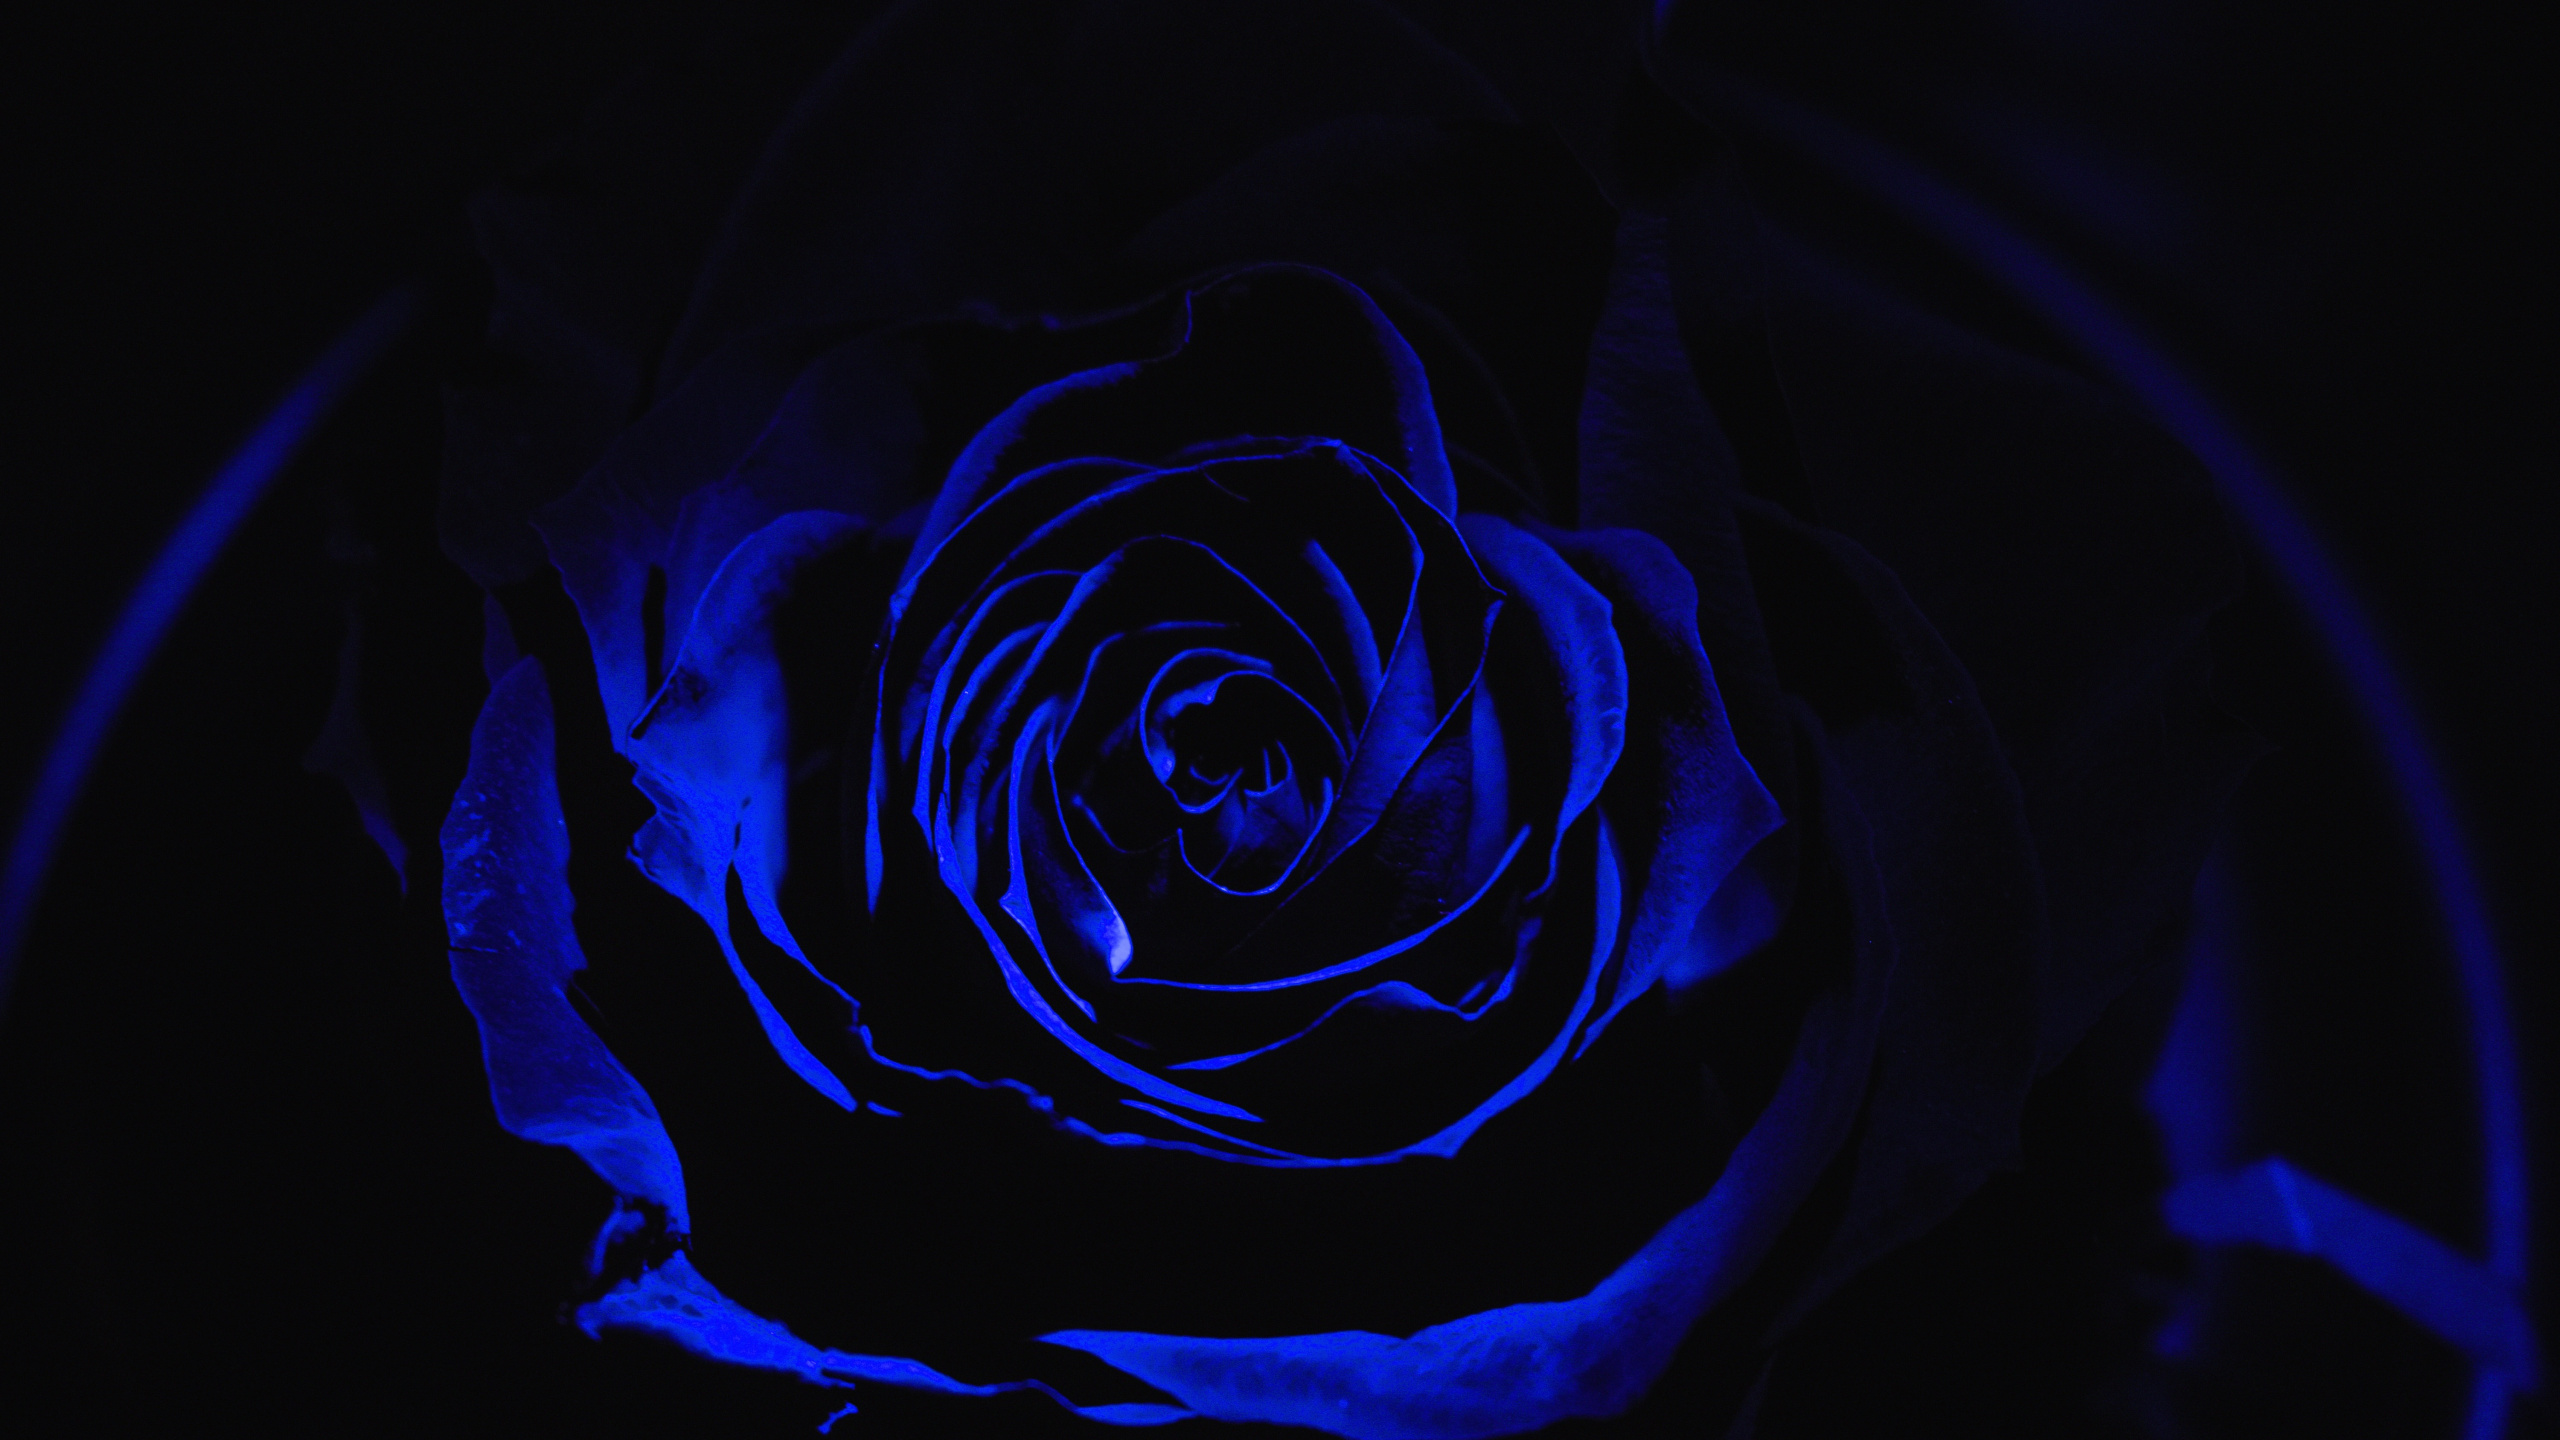 Rosa Azul en Fotografía de Cerca. Wallpaper in 2560x1440 Resolution